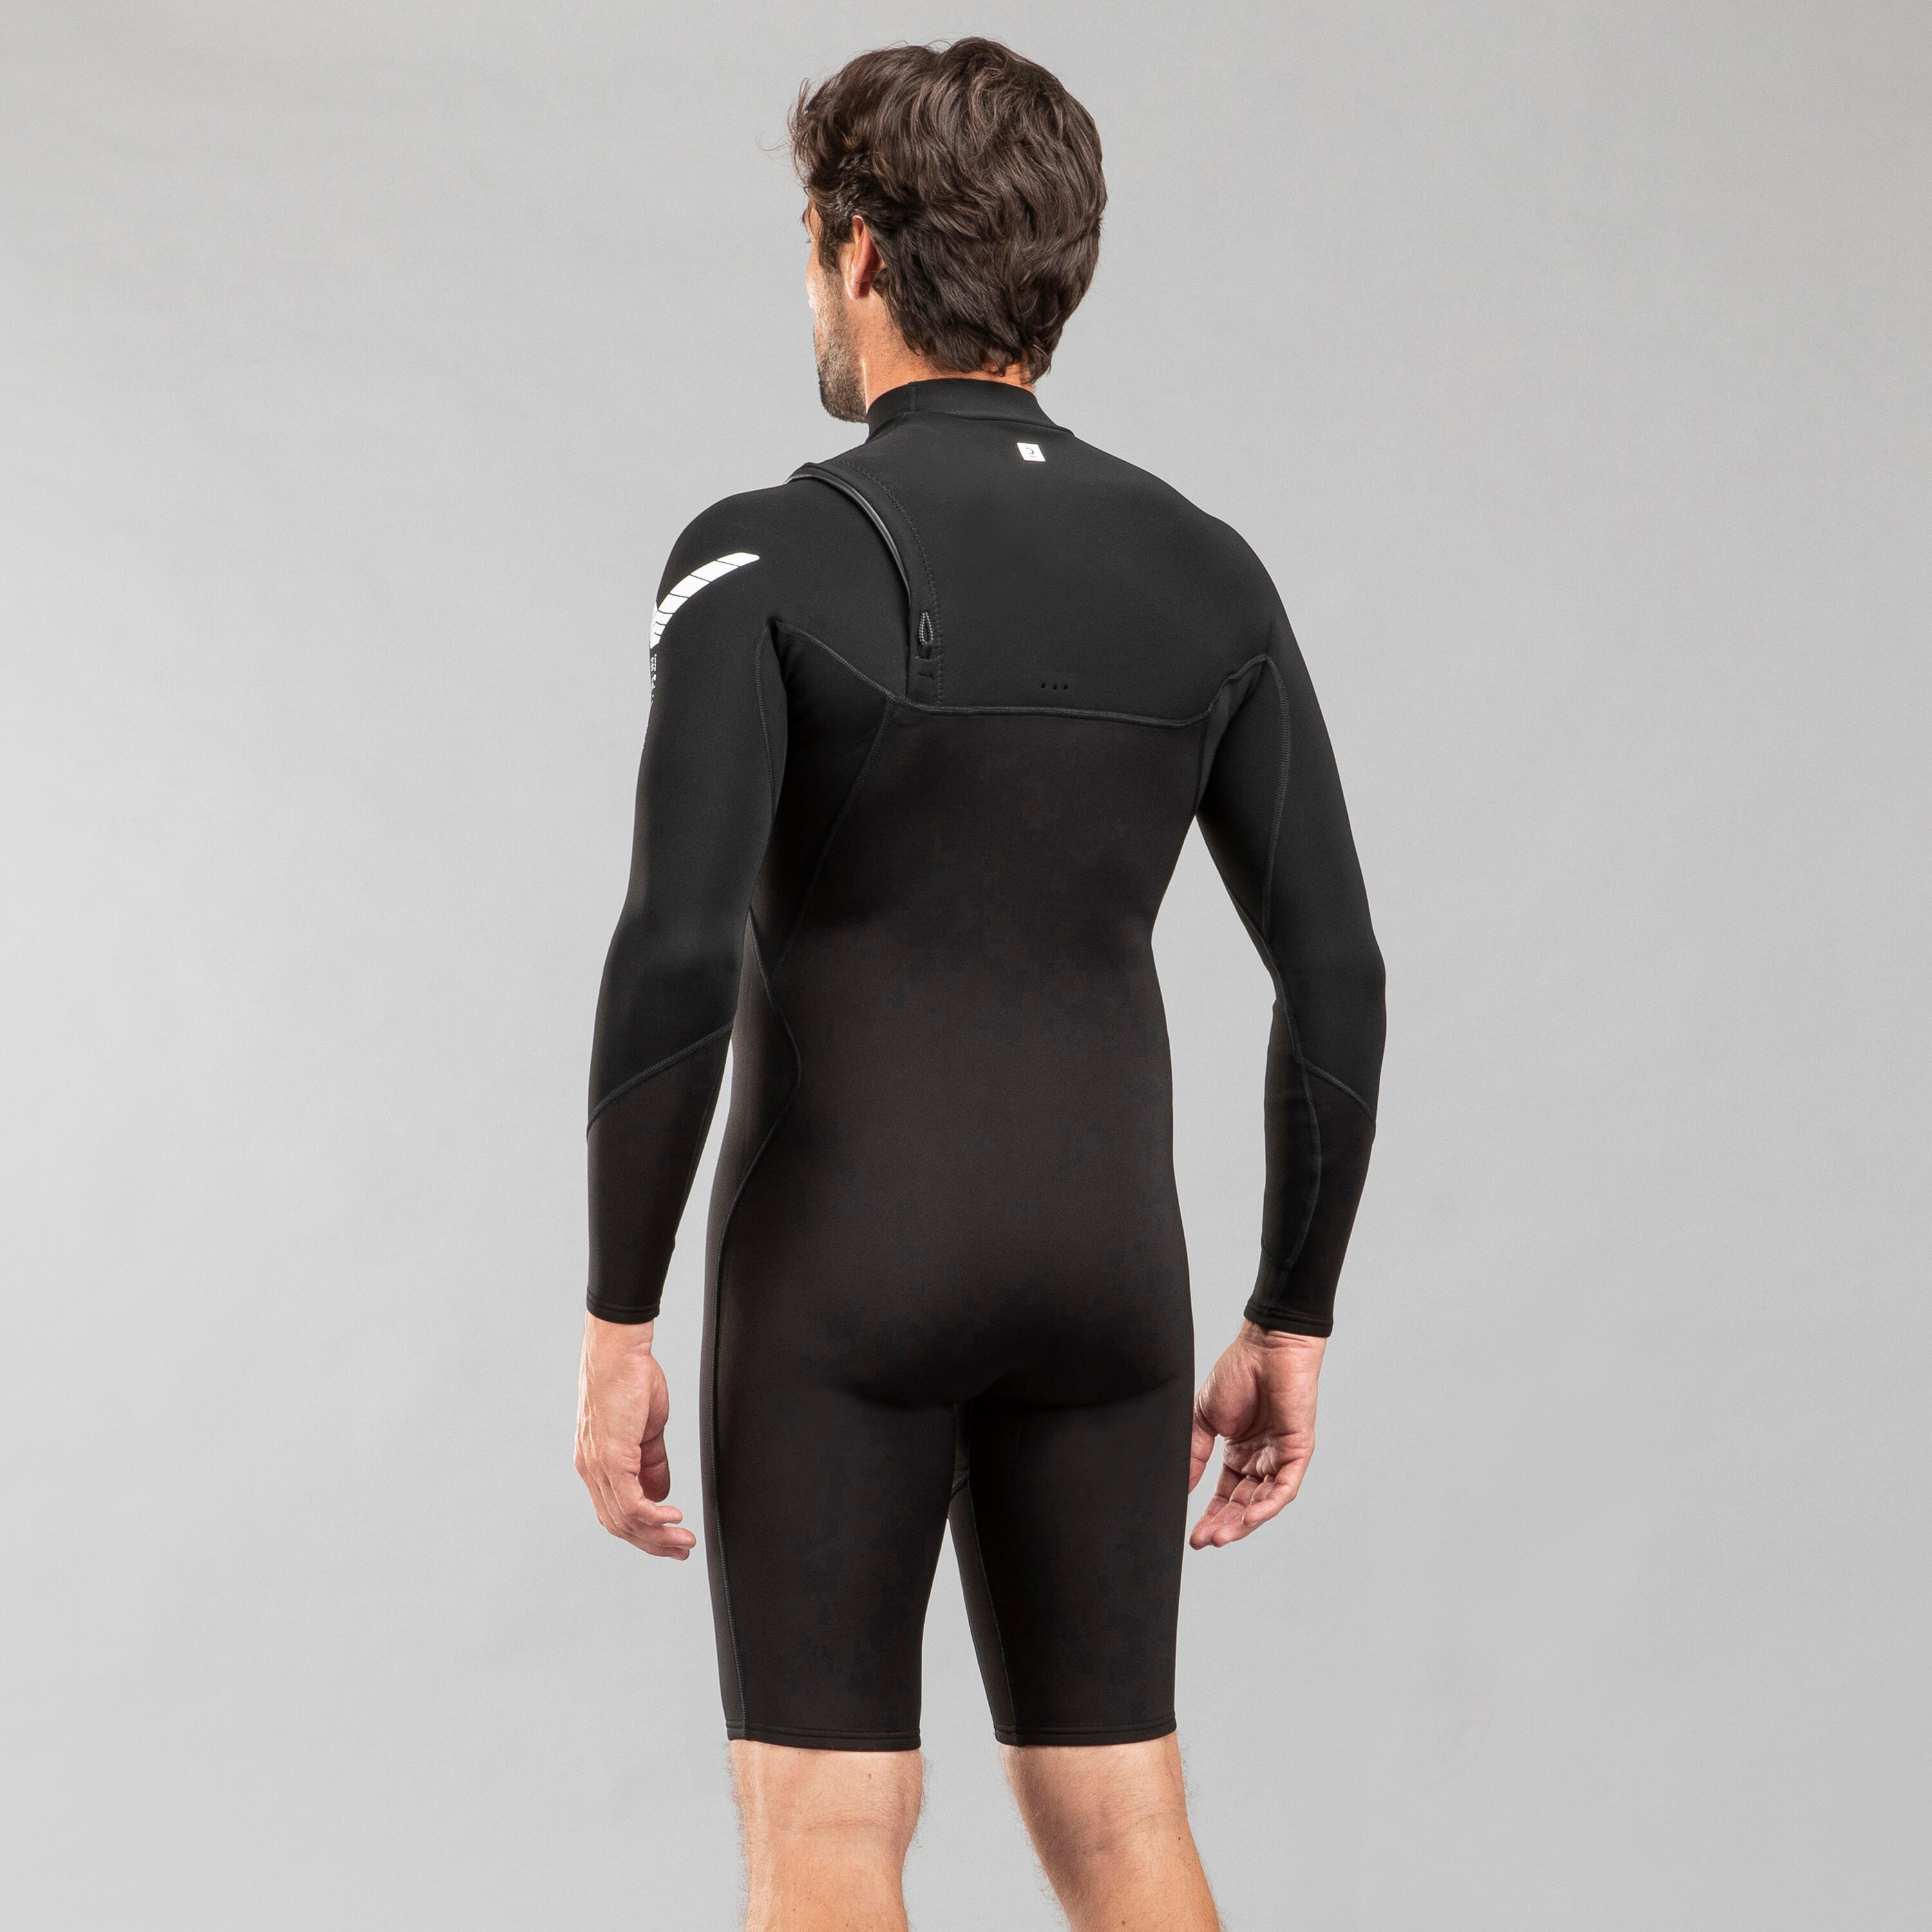 Men's Surfing Neoprene Long Sleeve No Zip Shorty Wetsuit 900 1.5 mm - Black 4/12